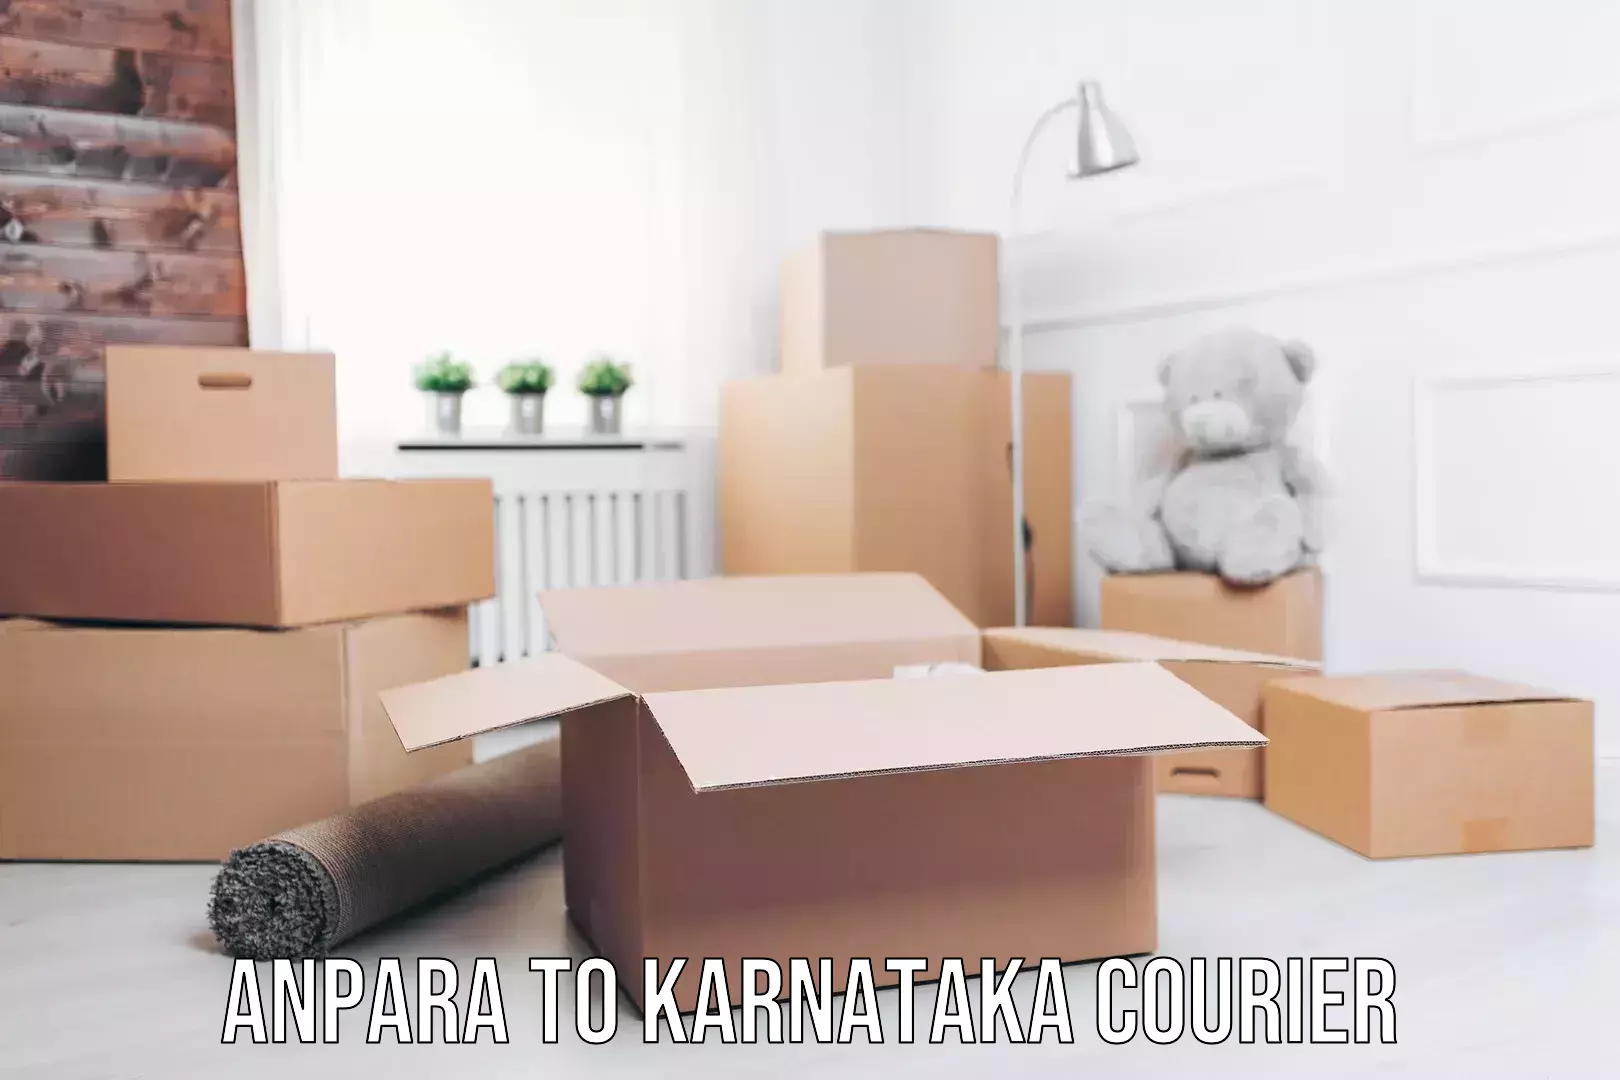 Supply chain efficiency Anpara to Karnataka